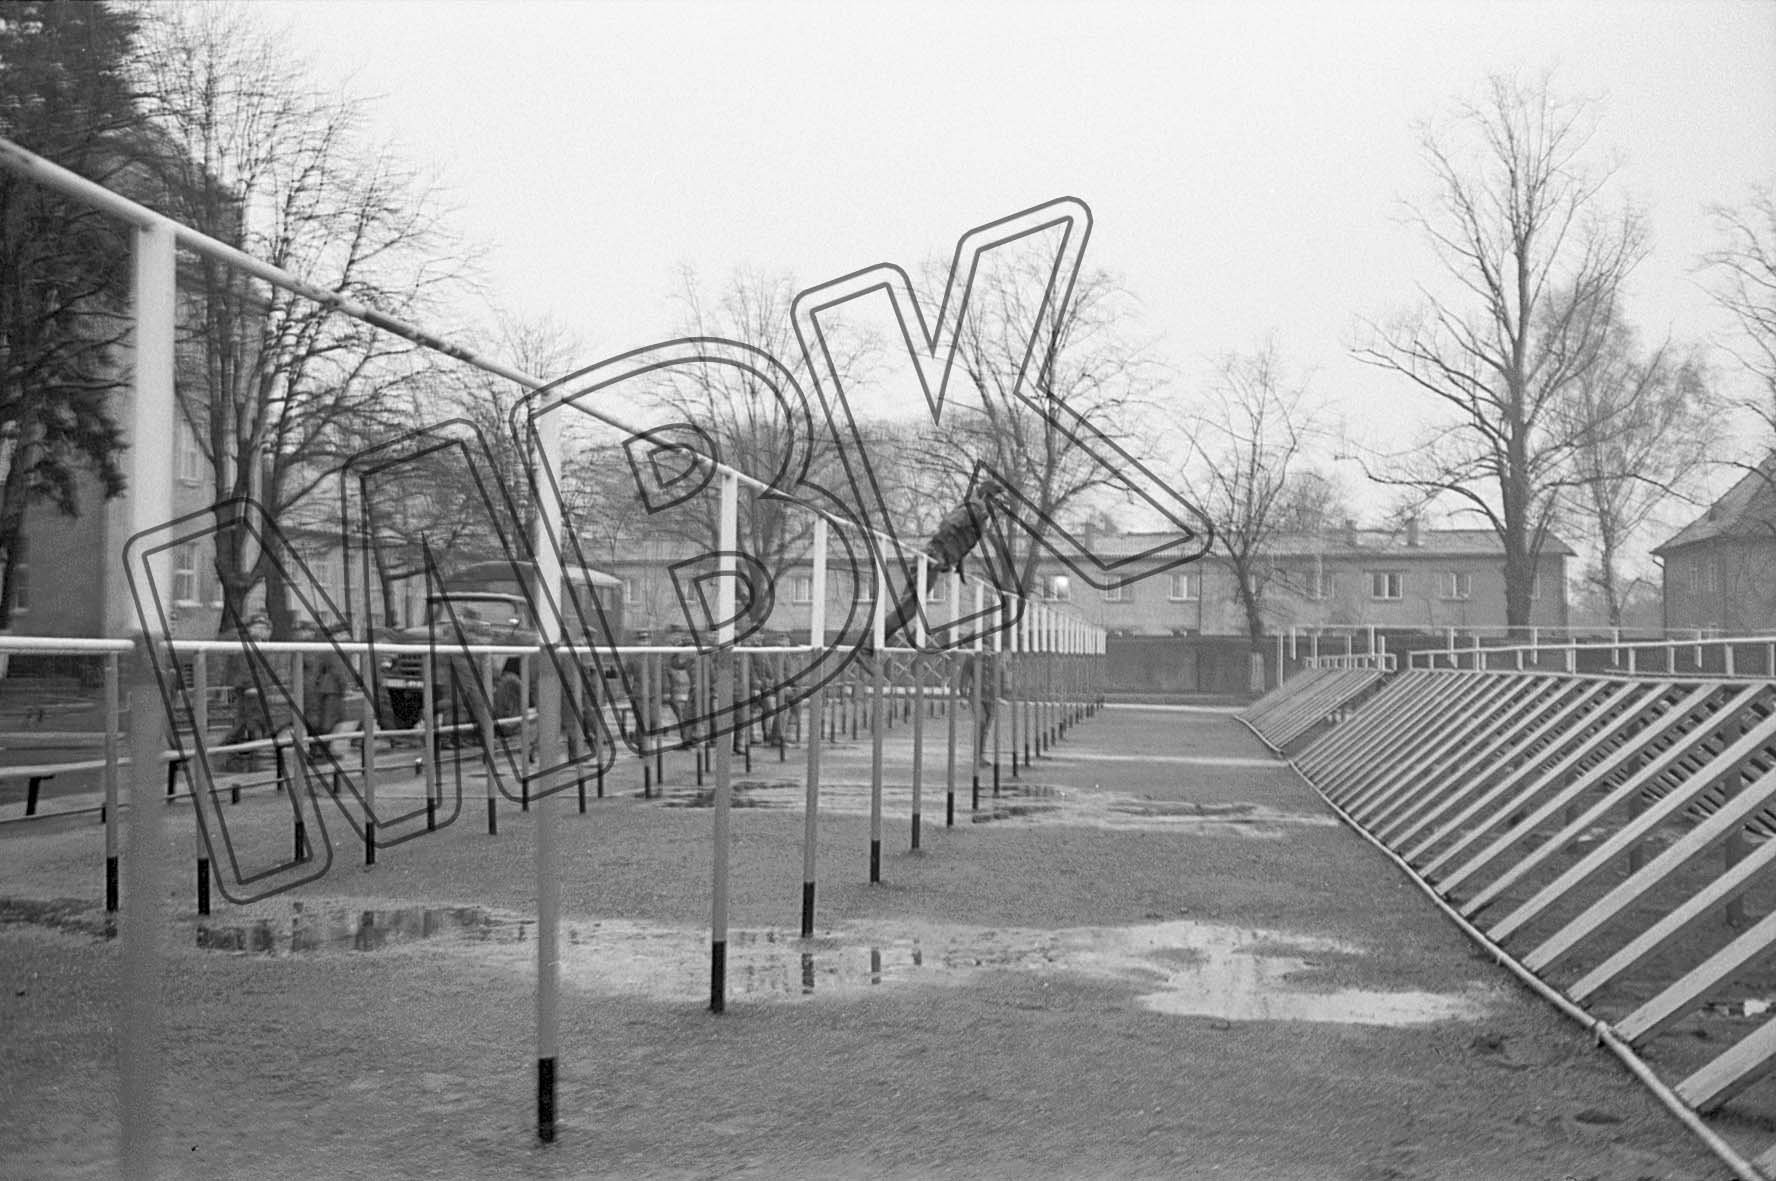 Fotografie: Sportgeräteparkour in einer Kaserne, Wünsdorf, 25. März 1992 (Museum Berlin-Karlshorst RR-P)